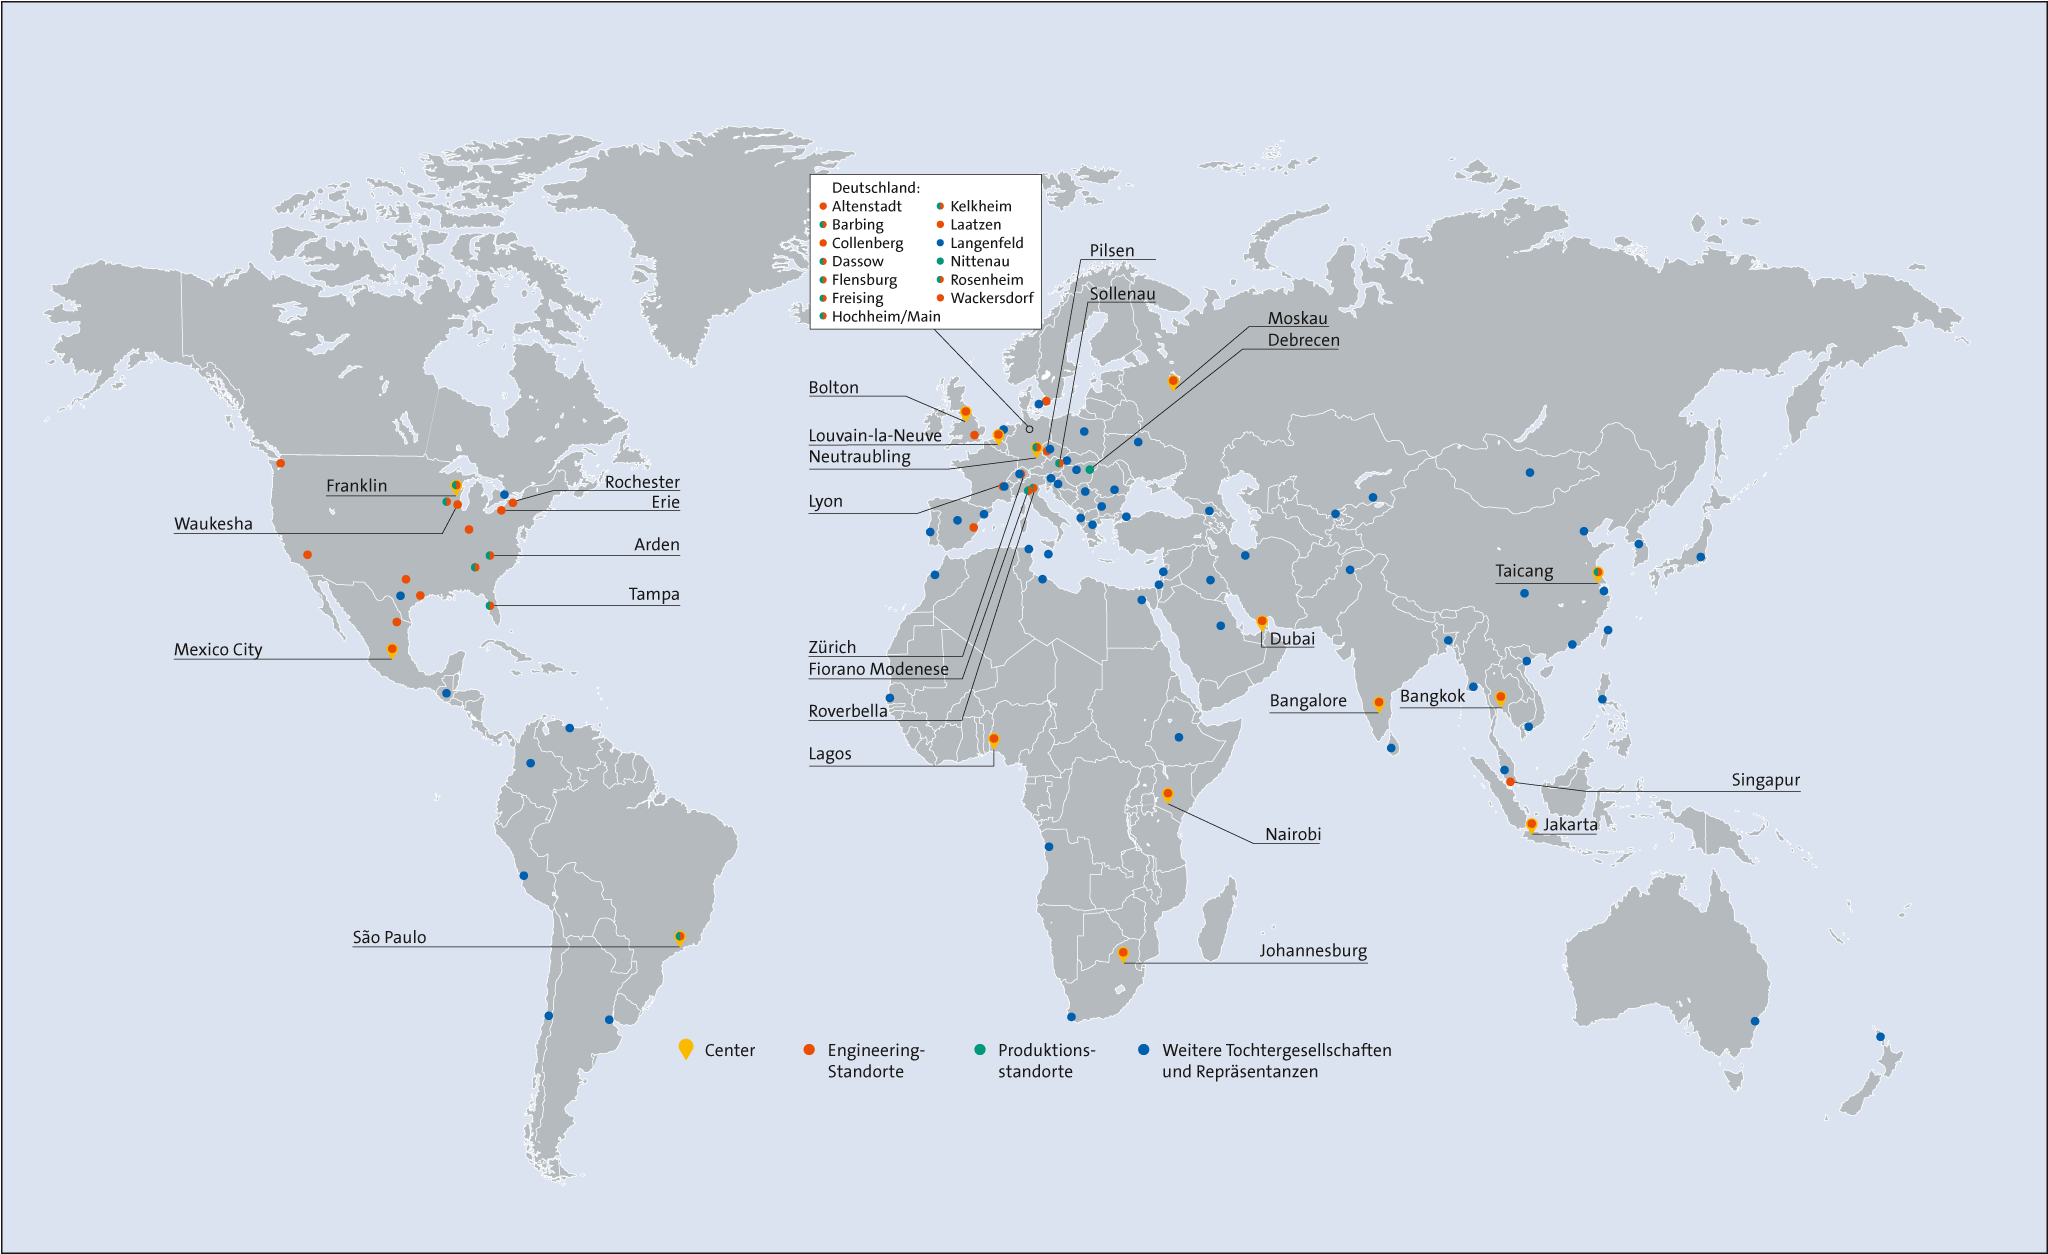 Krones Global Footprint